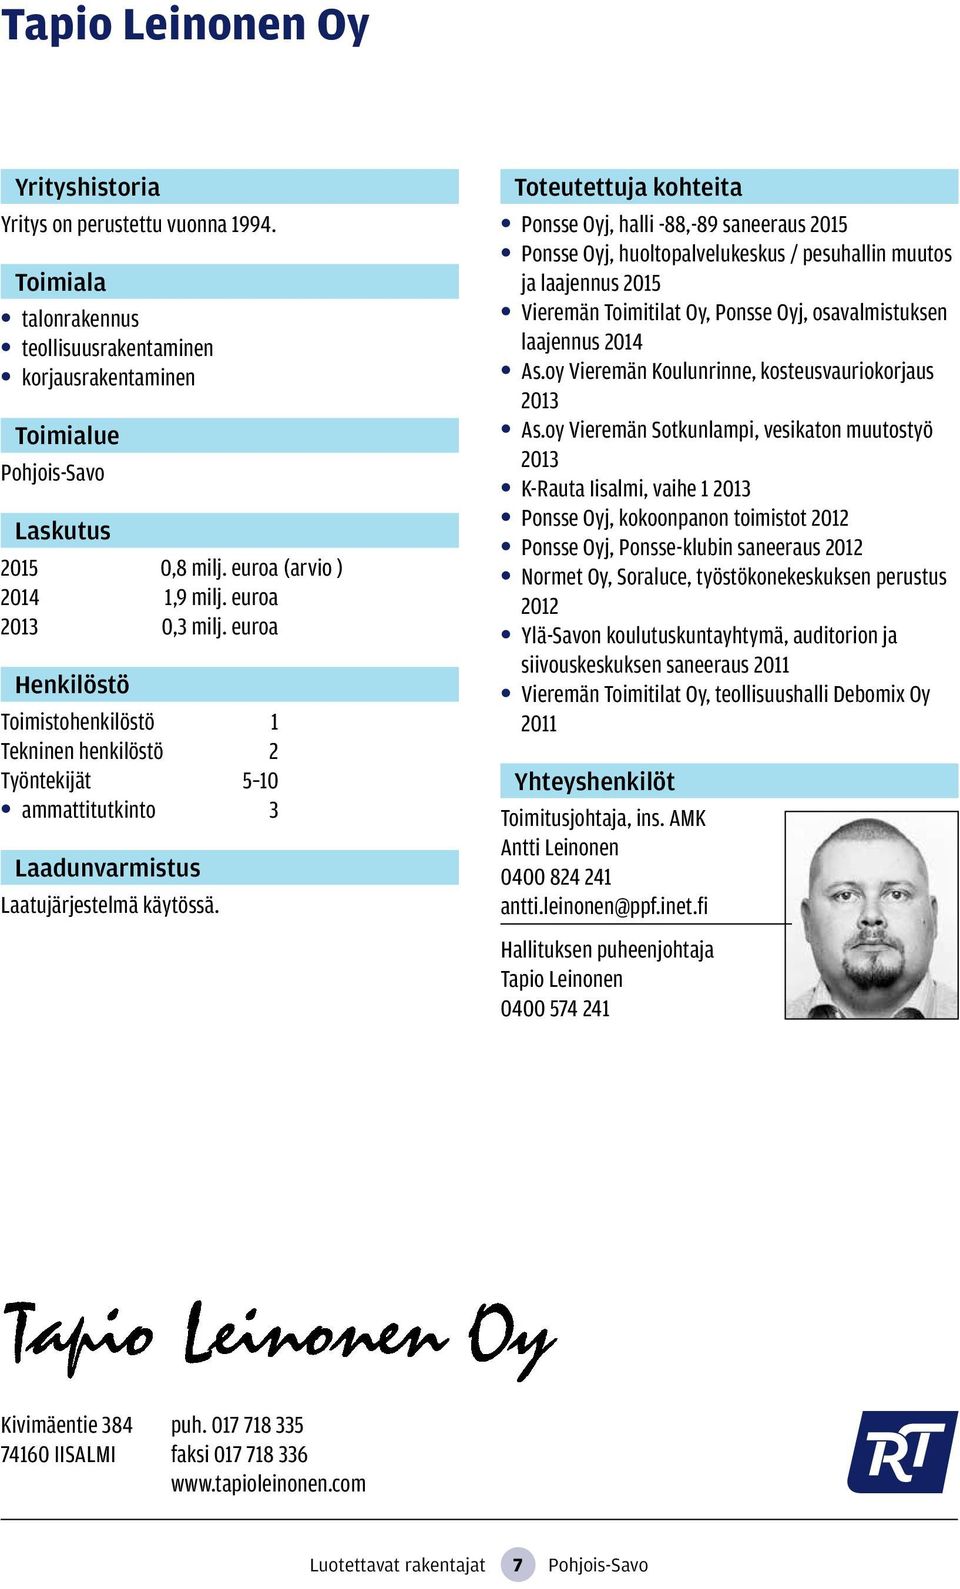 Ponsse Oyj, halli -88,-89 saneeraus 2015 Ponsse Oyj, huoltopalvelukeskus / pesuhallin muutos ja laajennus 2015 Vieremän Toimitilat Oy, Ponsse Oyj, osavalmistuksen laajennus 2014 As.